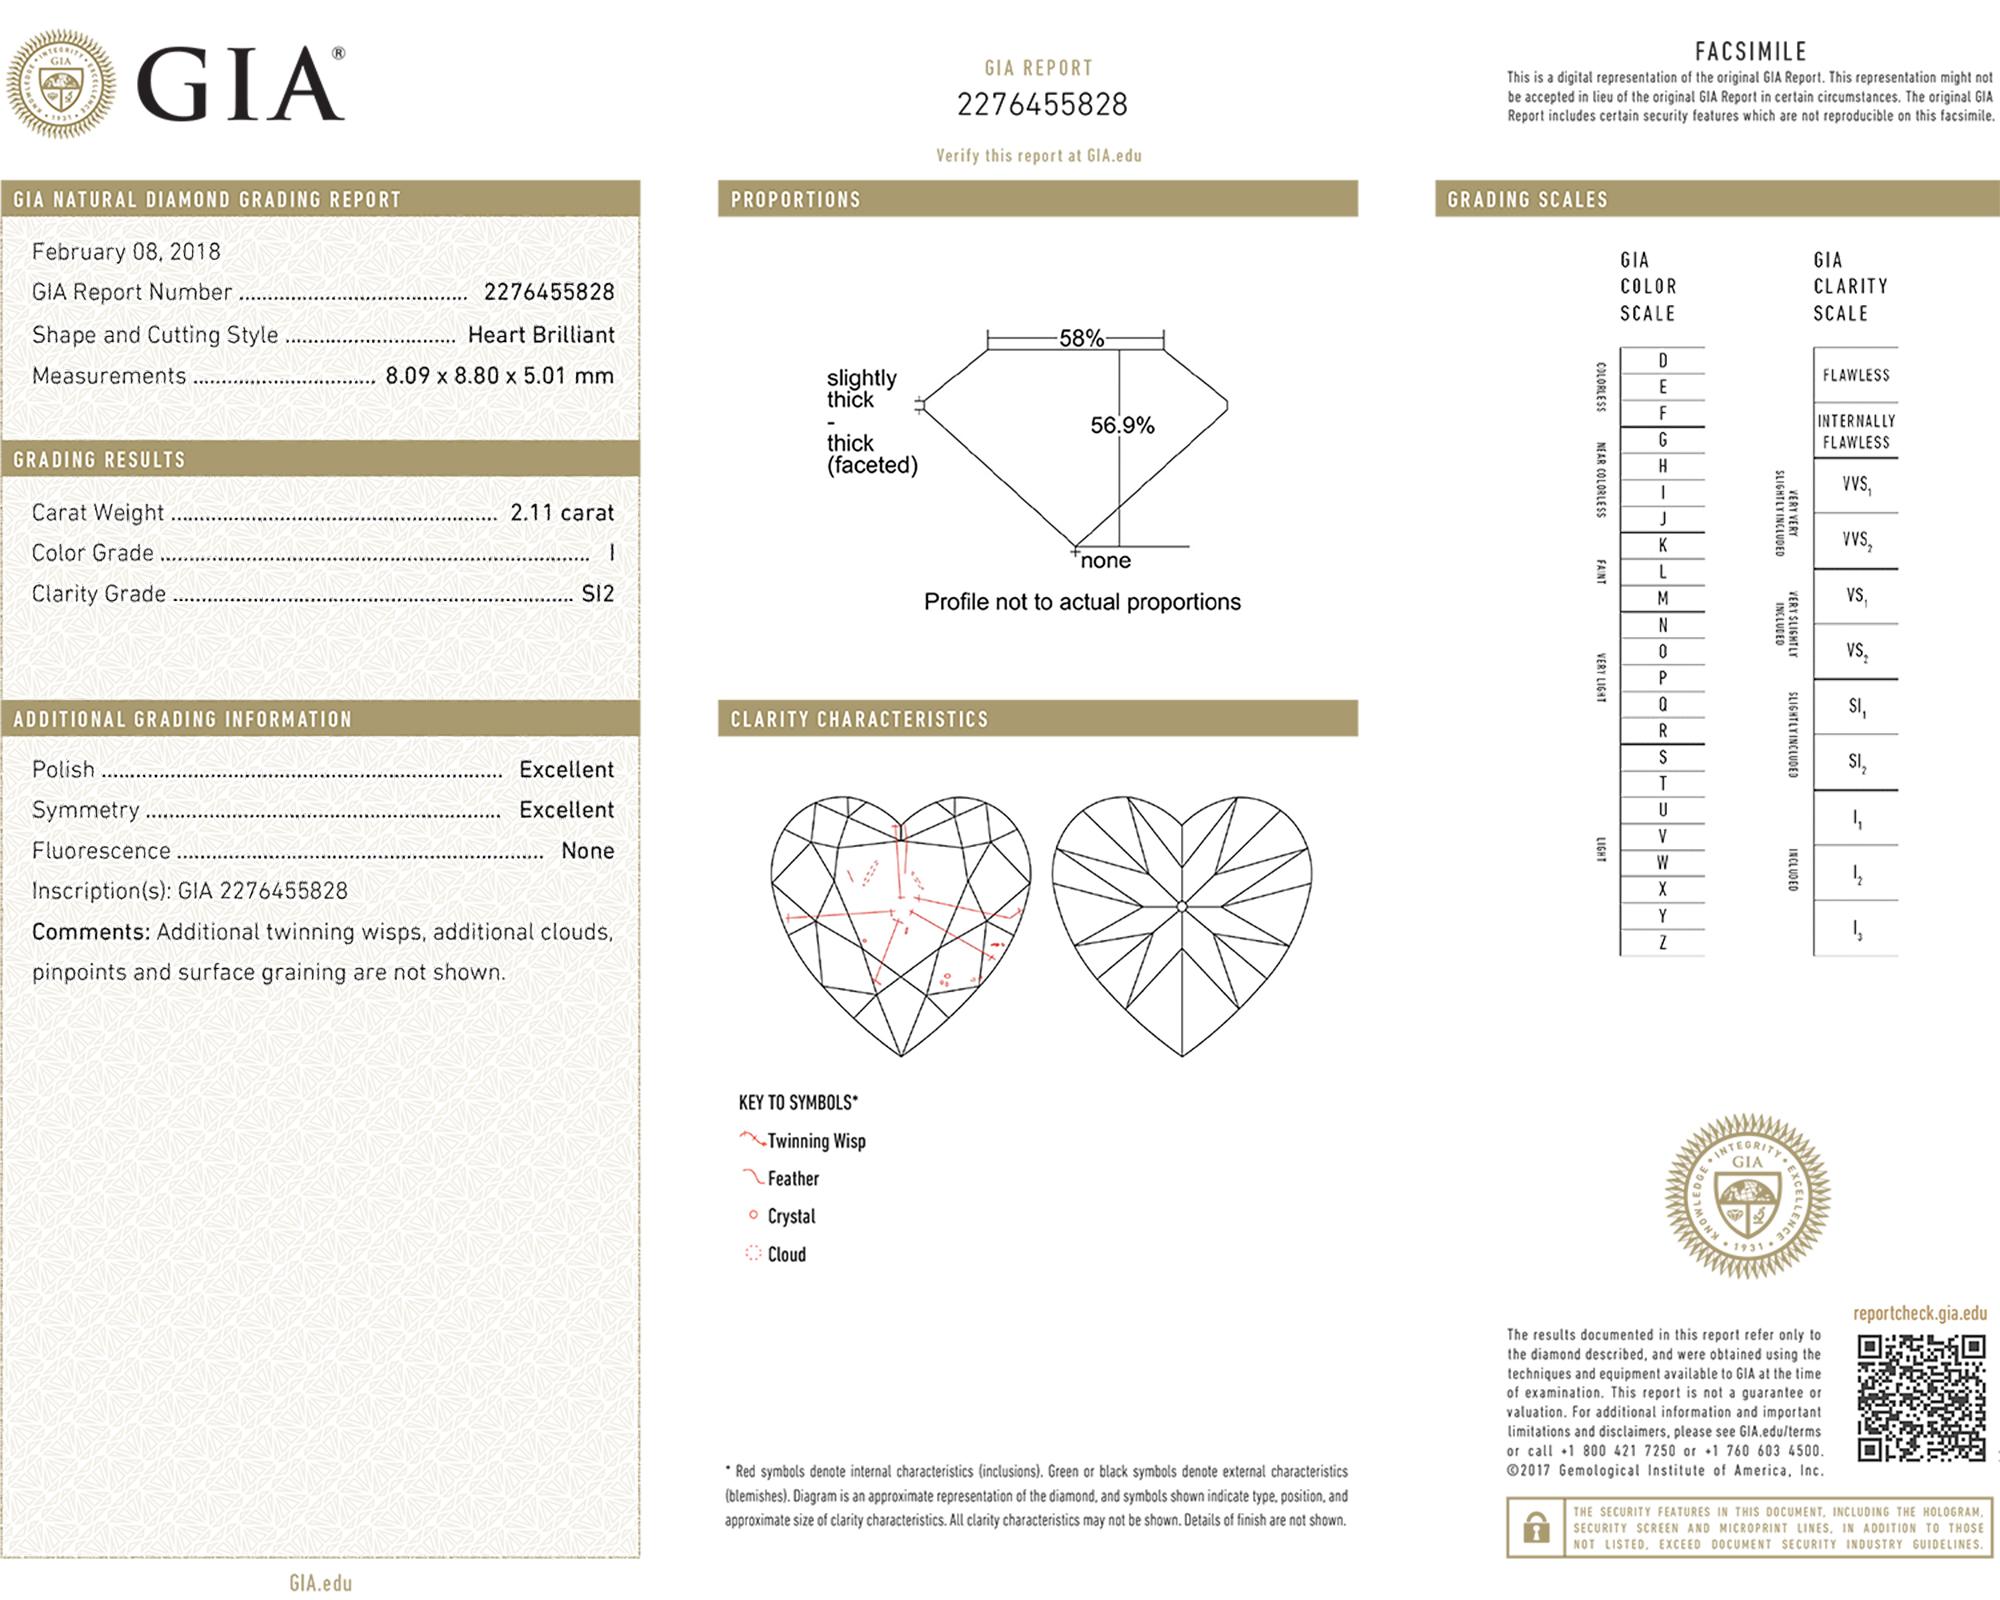 Contemporary Spectra Fine Jewelry 2.11 Carat Heart-shape Diamond Pendant Necklace For Sale